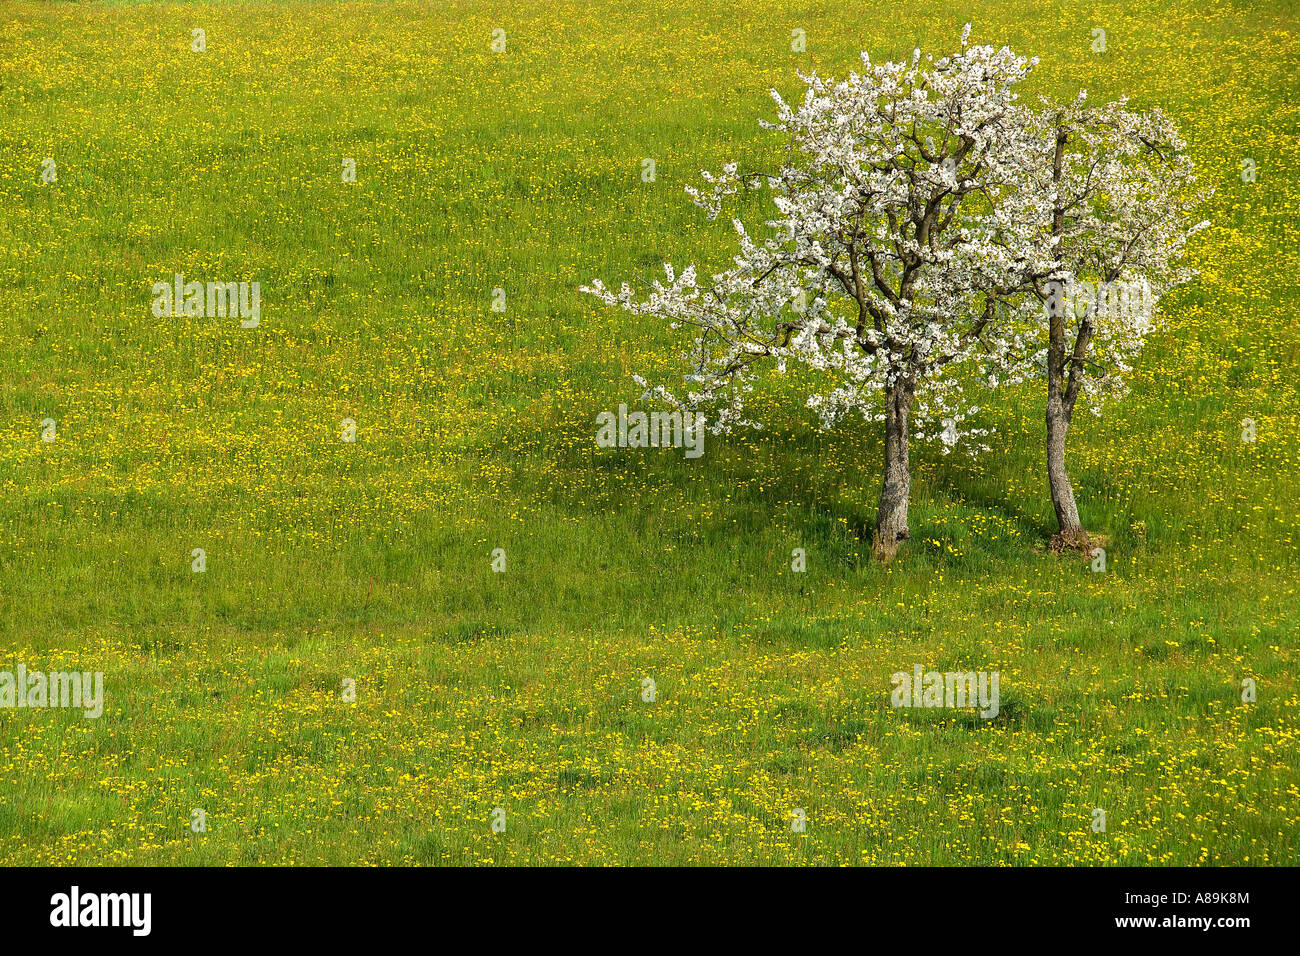 Prato primavera con dandalions (Taraxacum officinale) e due alberi di ciliegio (Prunus avium), Svizzera Foto Stock